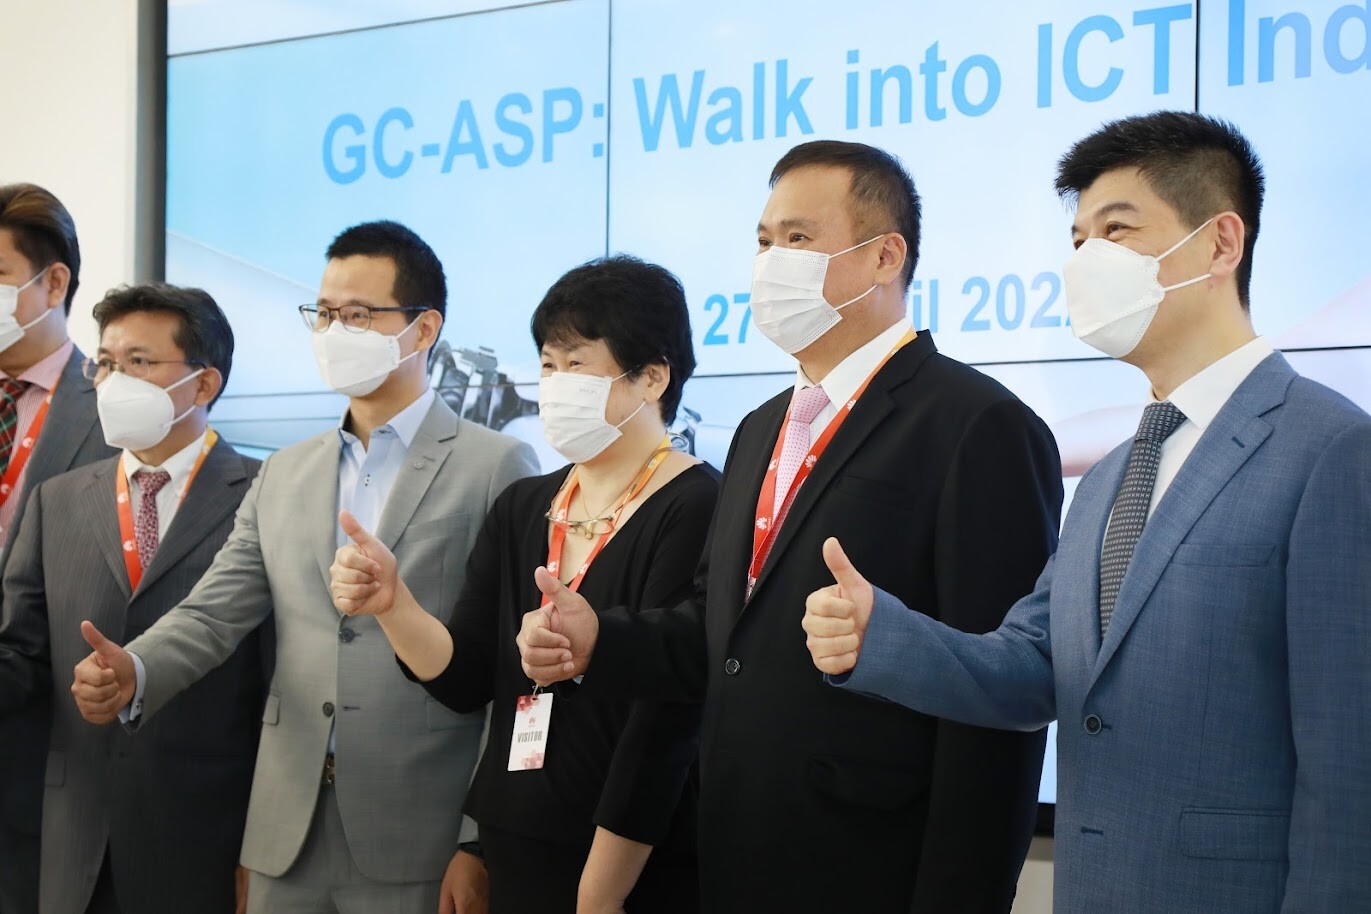 ดีอีเอส ร่วม GC-ASP: Walk into ICT Industry เพิ่มทักษะและพัฒนากำลังคนด้านดิจิทัลในประเทศไทย